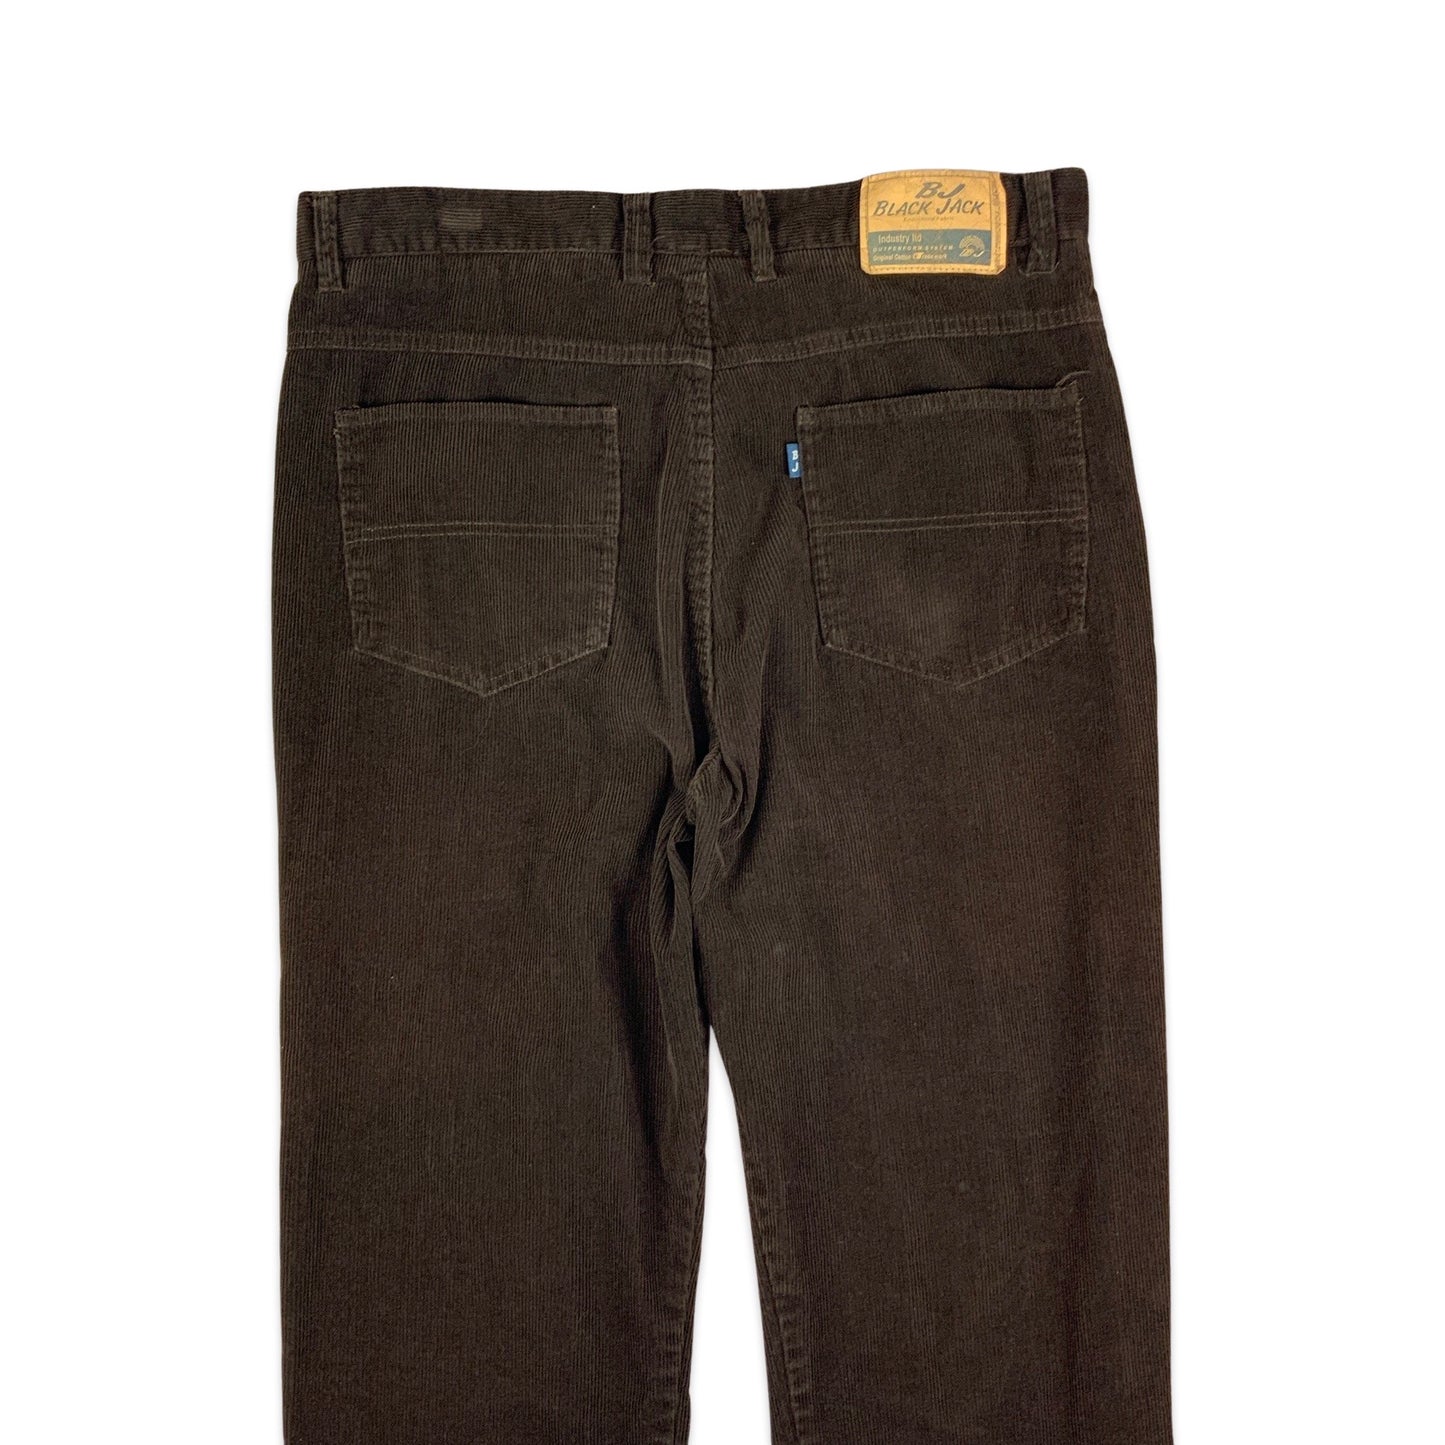 Vintage Brown Corduroy Trousers 36W 27L